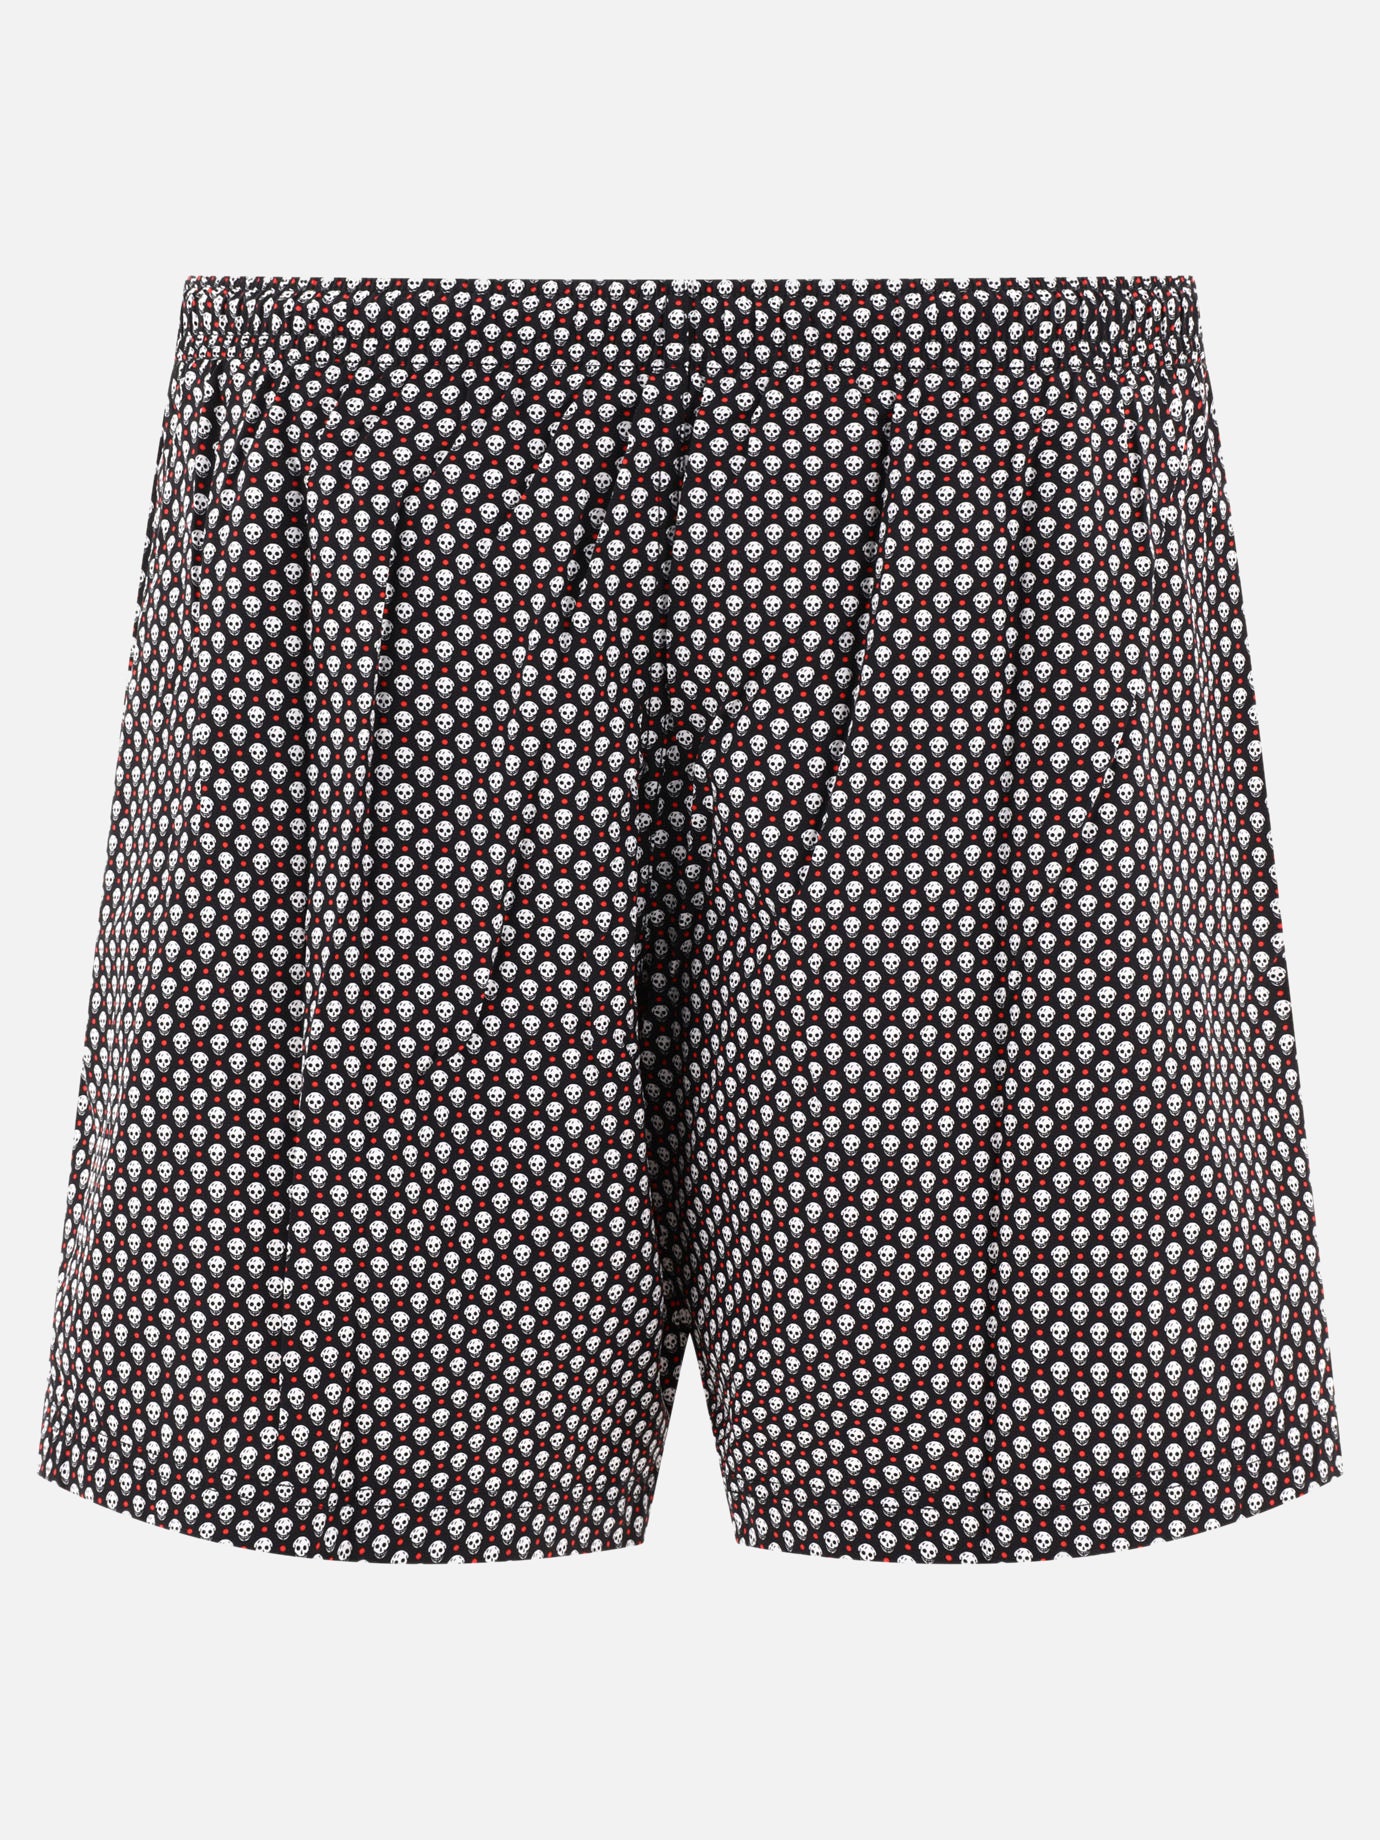 "Skull Dots" swim shorts